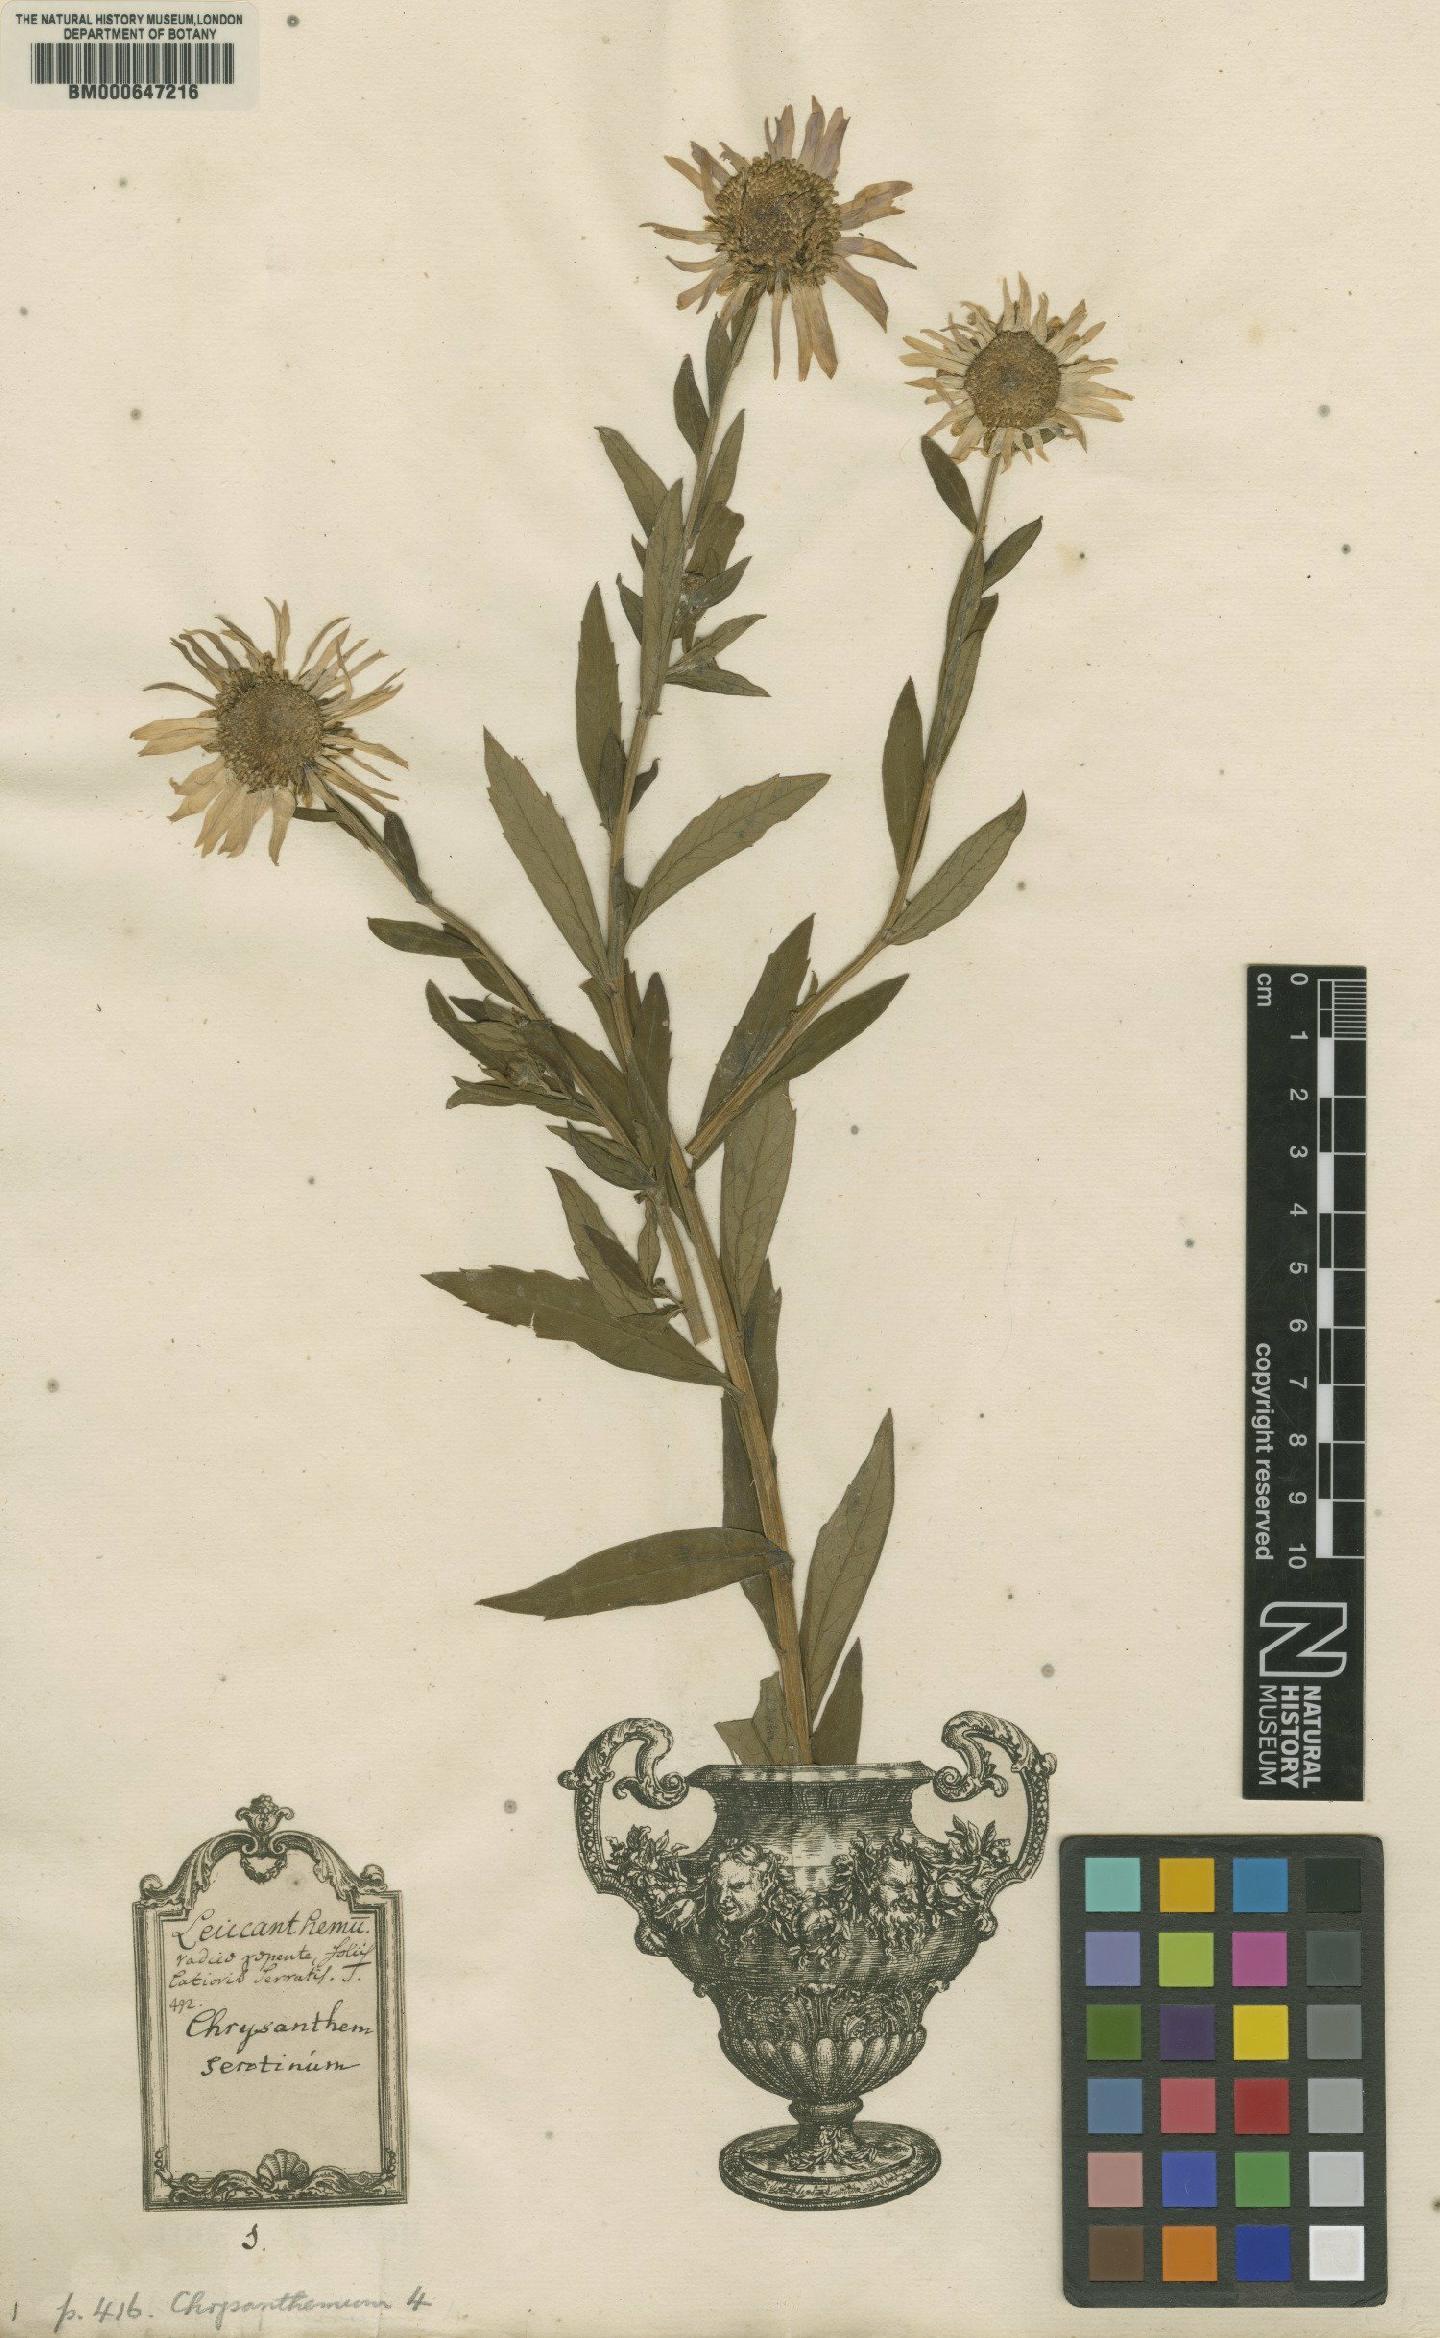 To NHMUK collection (Chrysanthemum serotinum L.; Lectotype; NHMUK:ecatalogue:4704025)